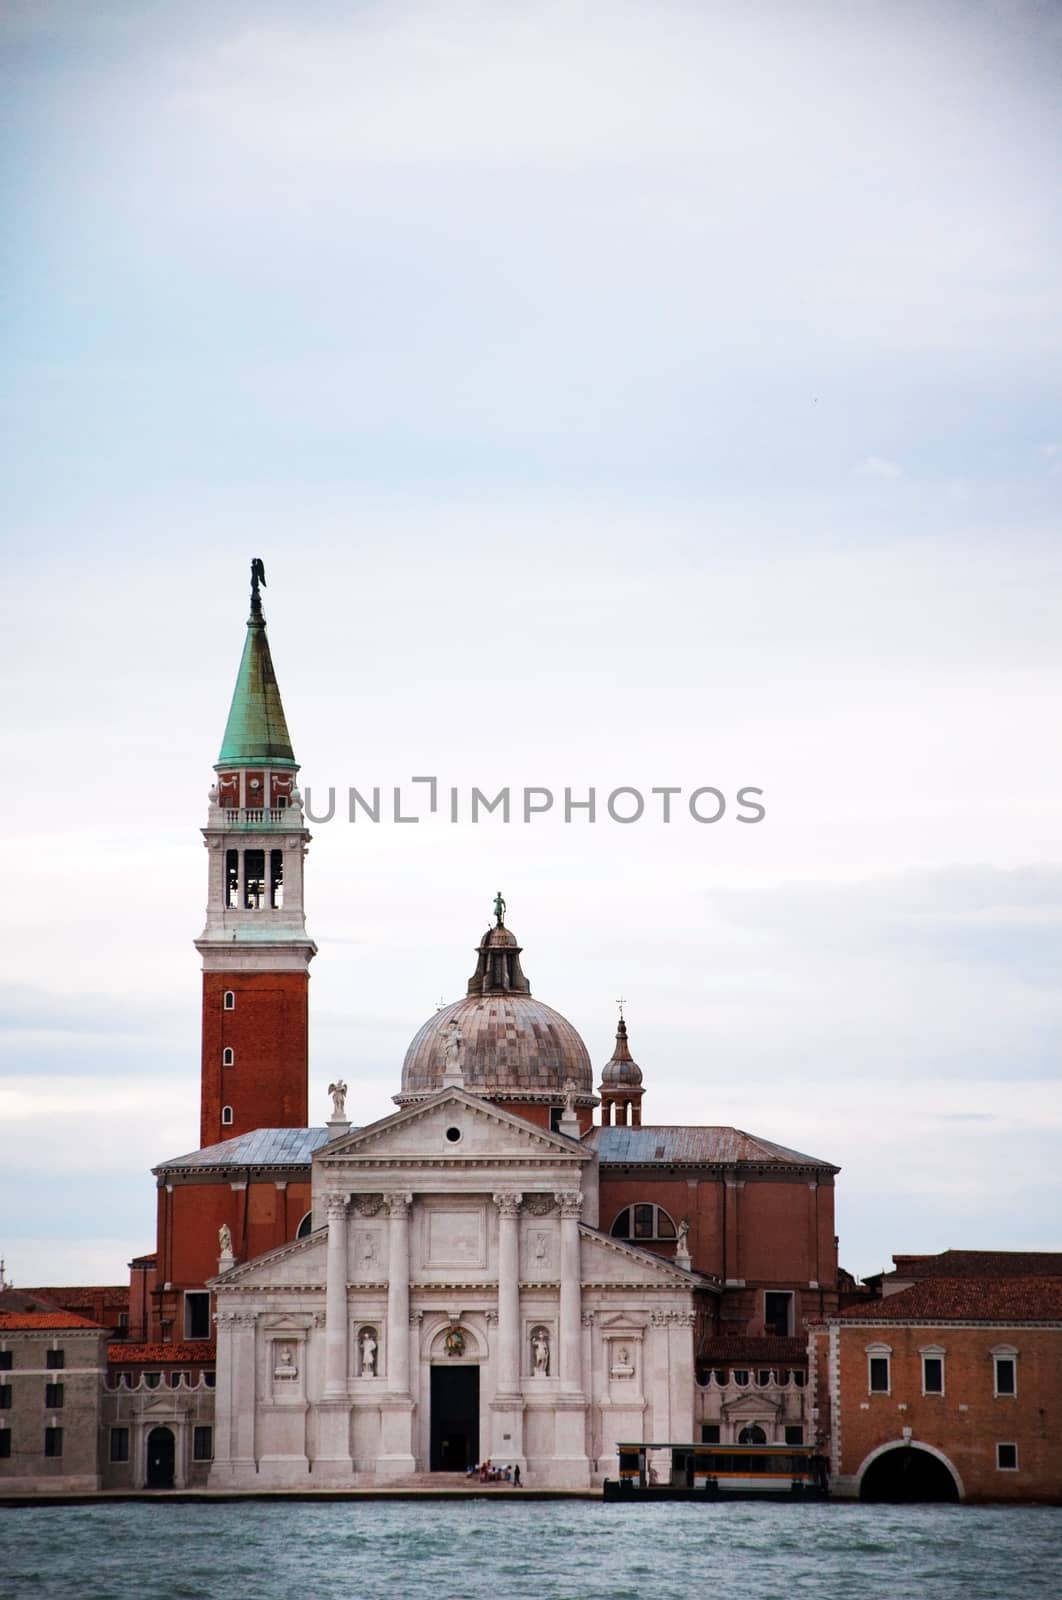 venice city italy Church of San Giorgio Maggiore landmark architecture